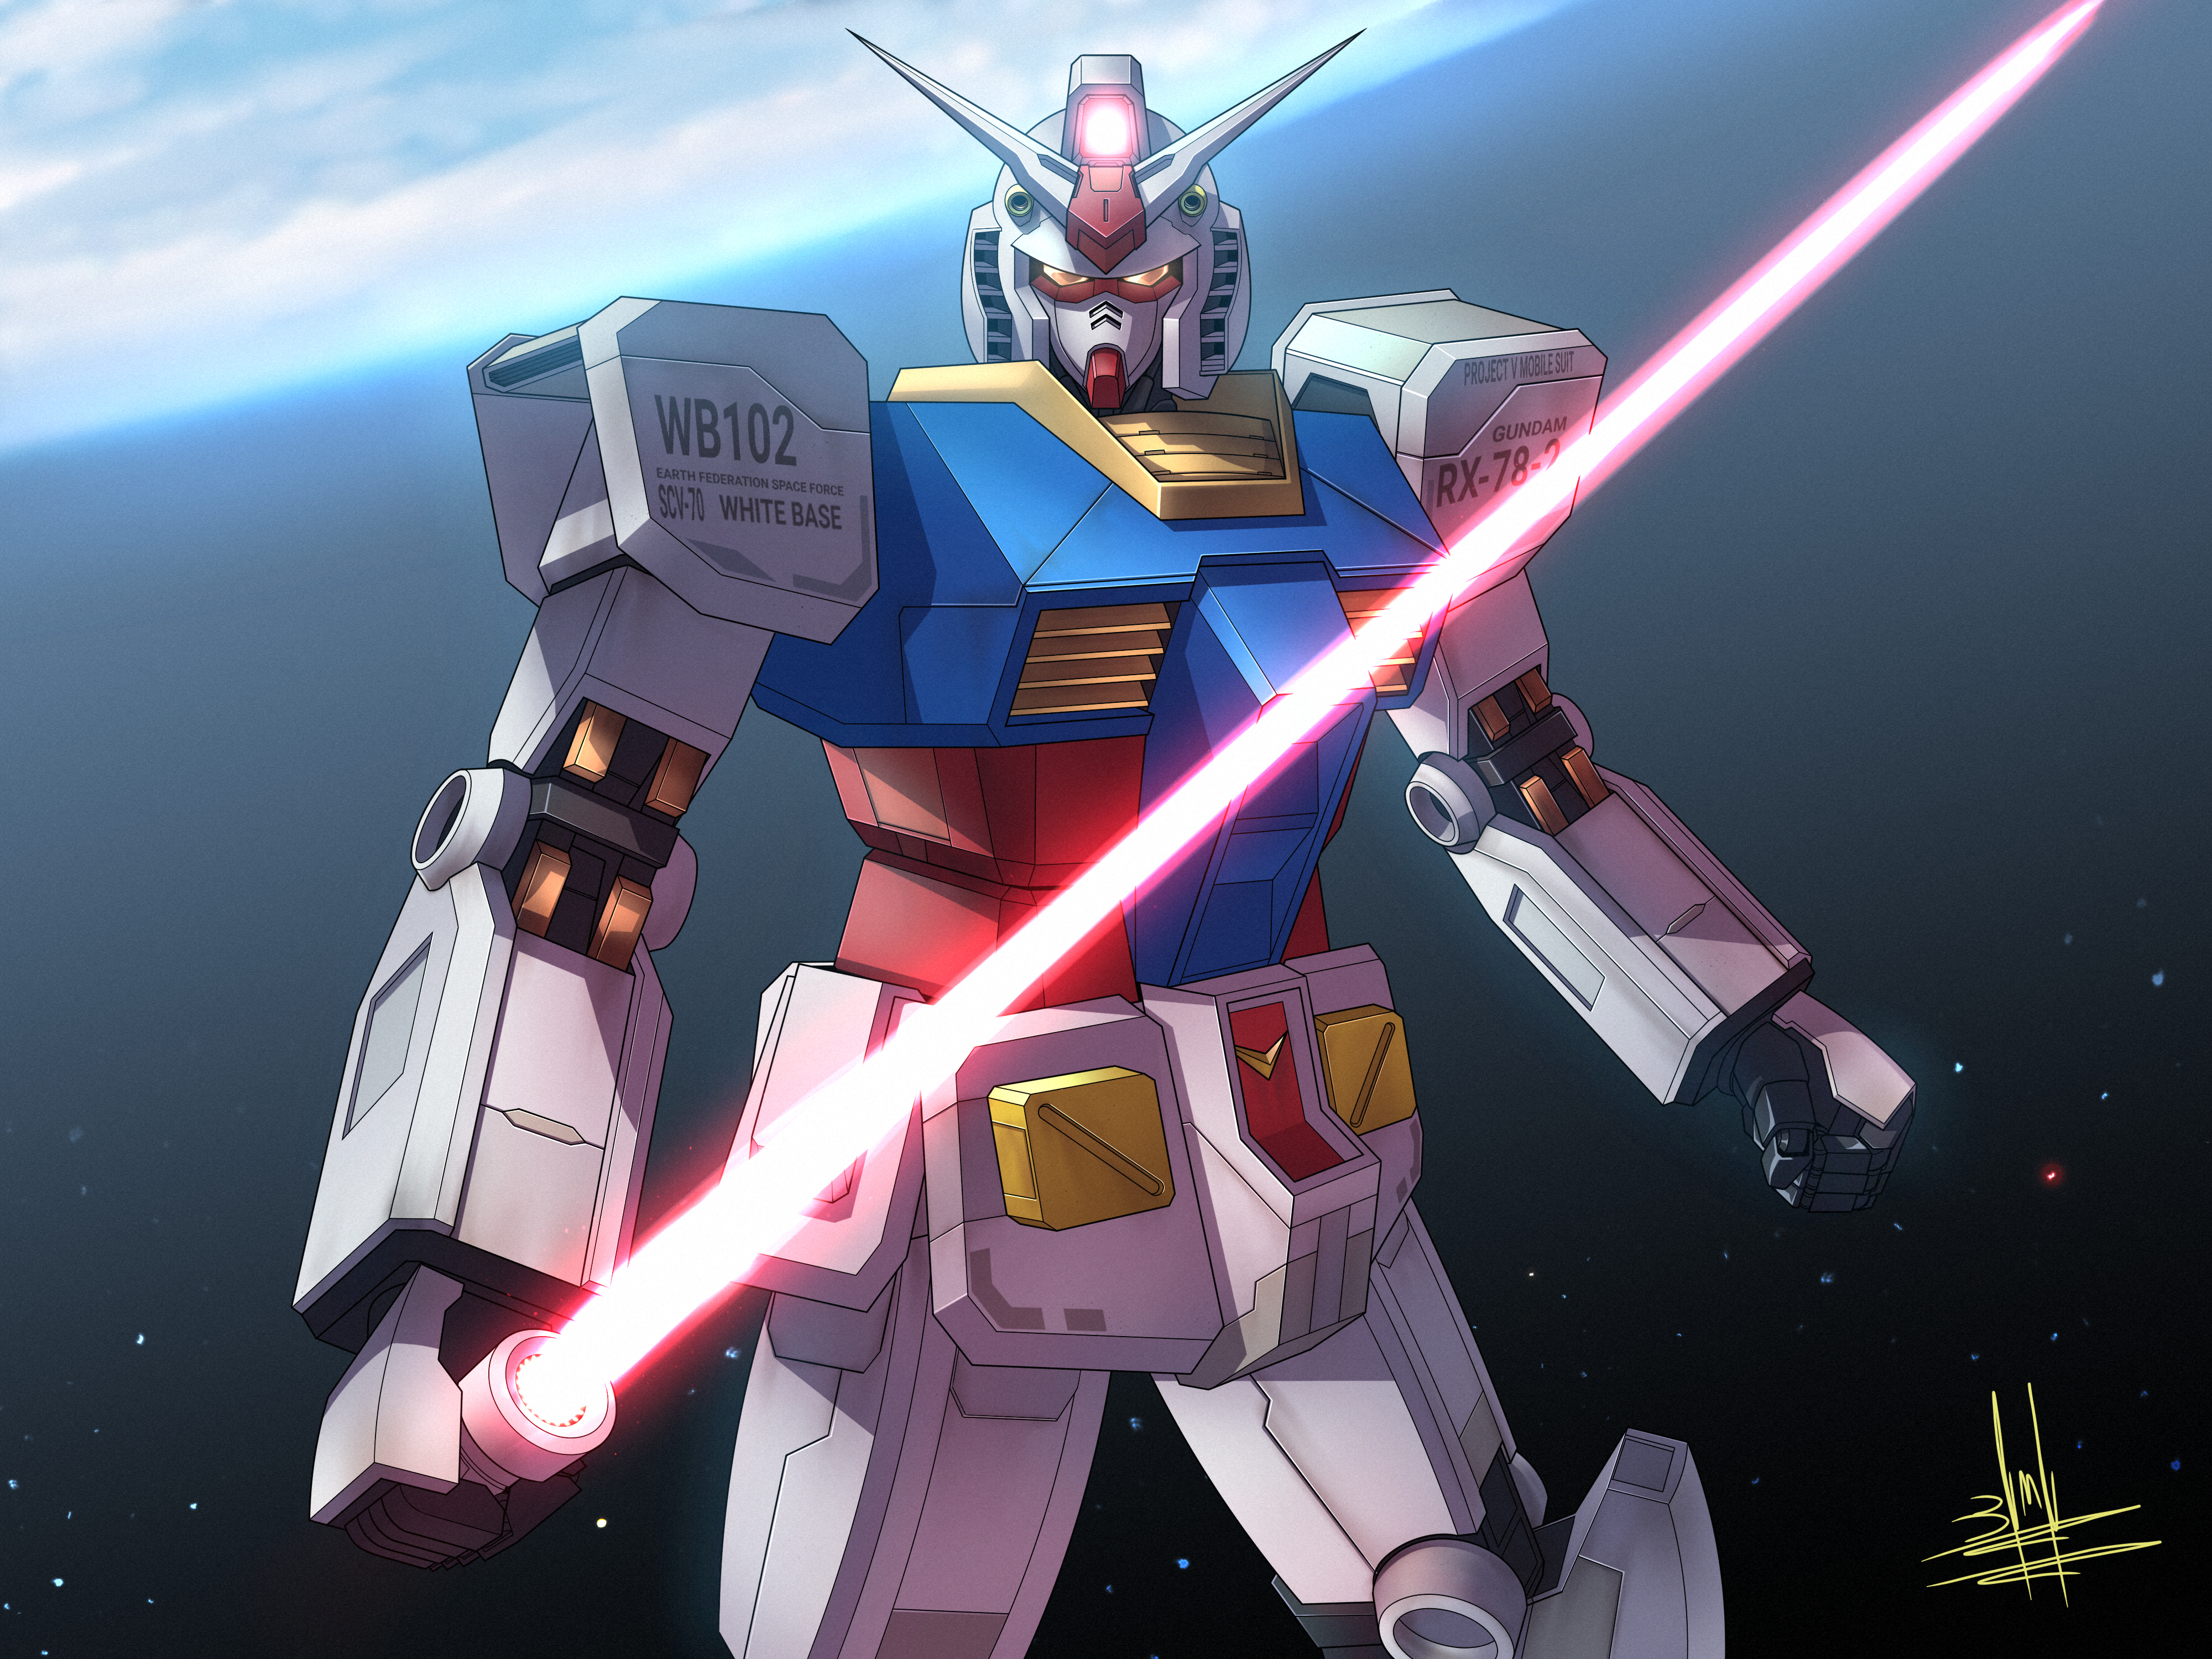 Anime 4000x3000 anime mechs Super Robot Taisen Mobile Suit Gundam RX-78 Gundam Gundam artwork digital art fan art